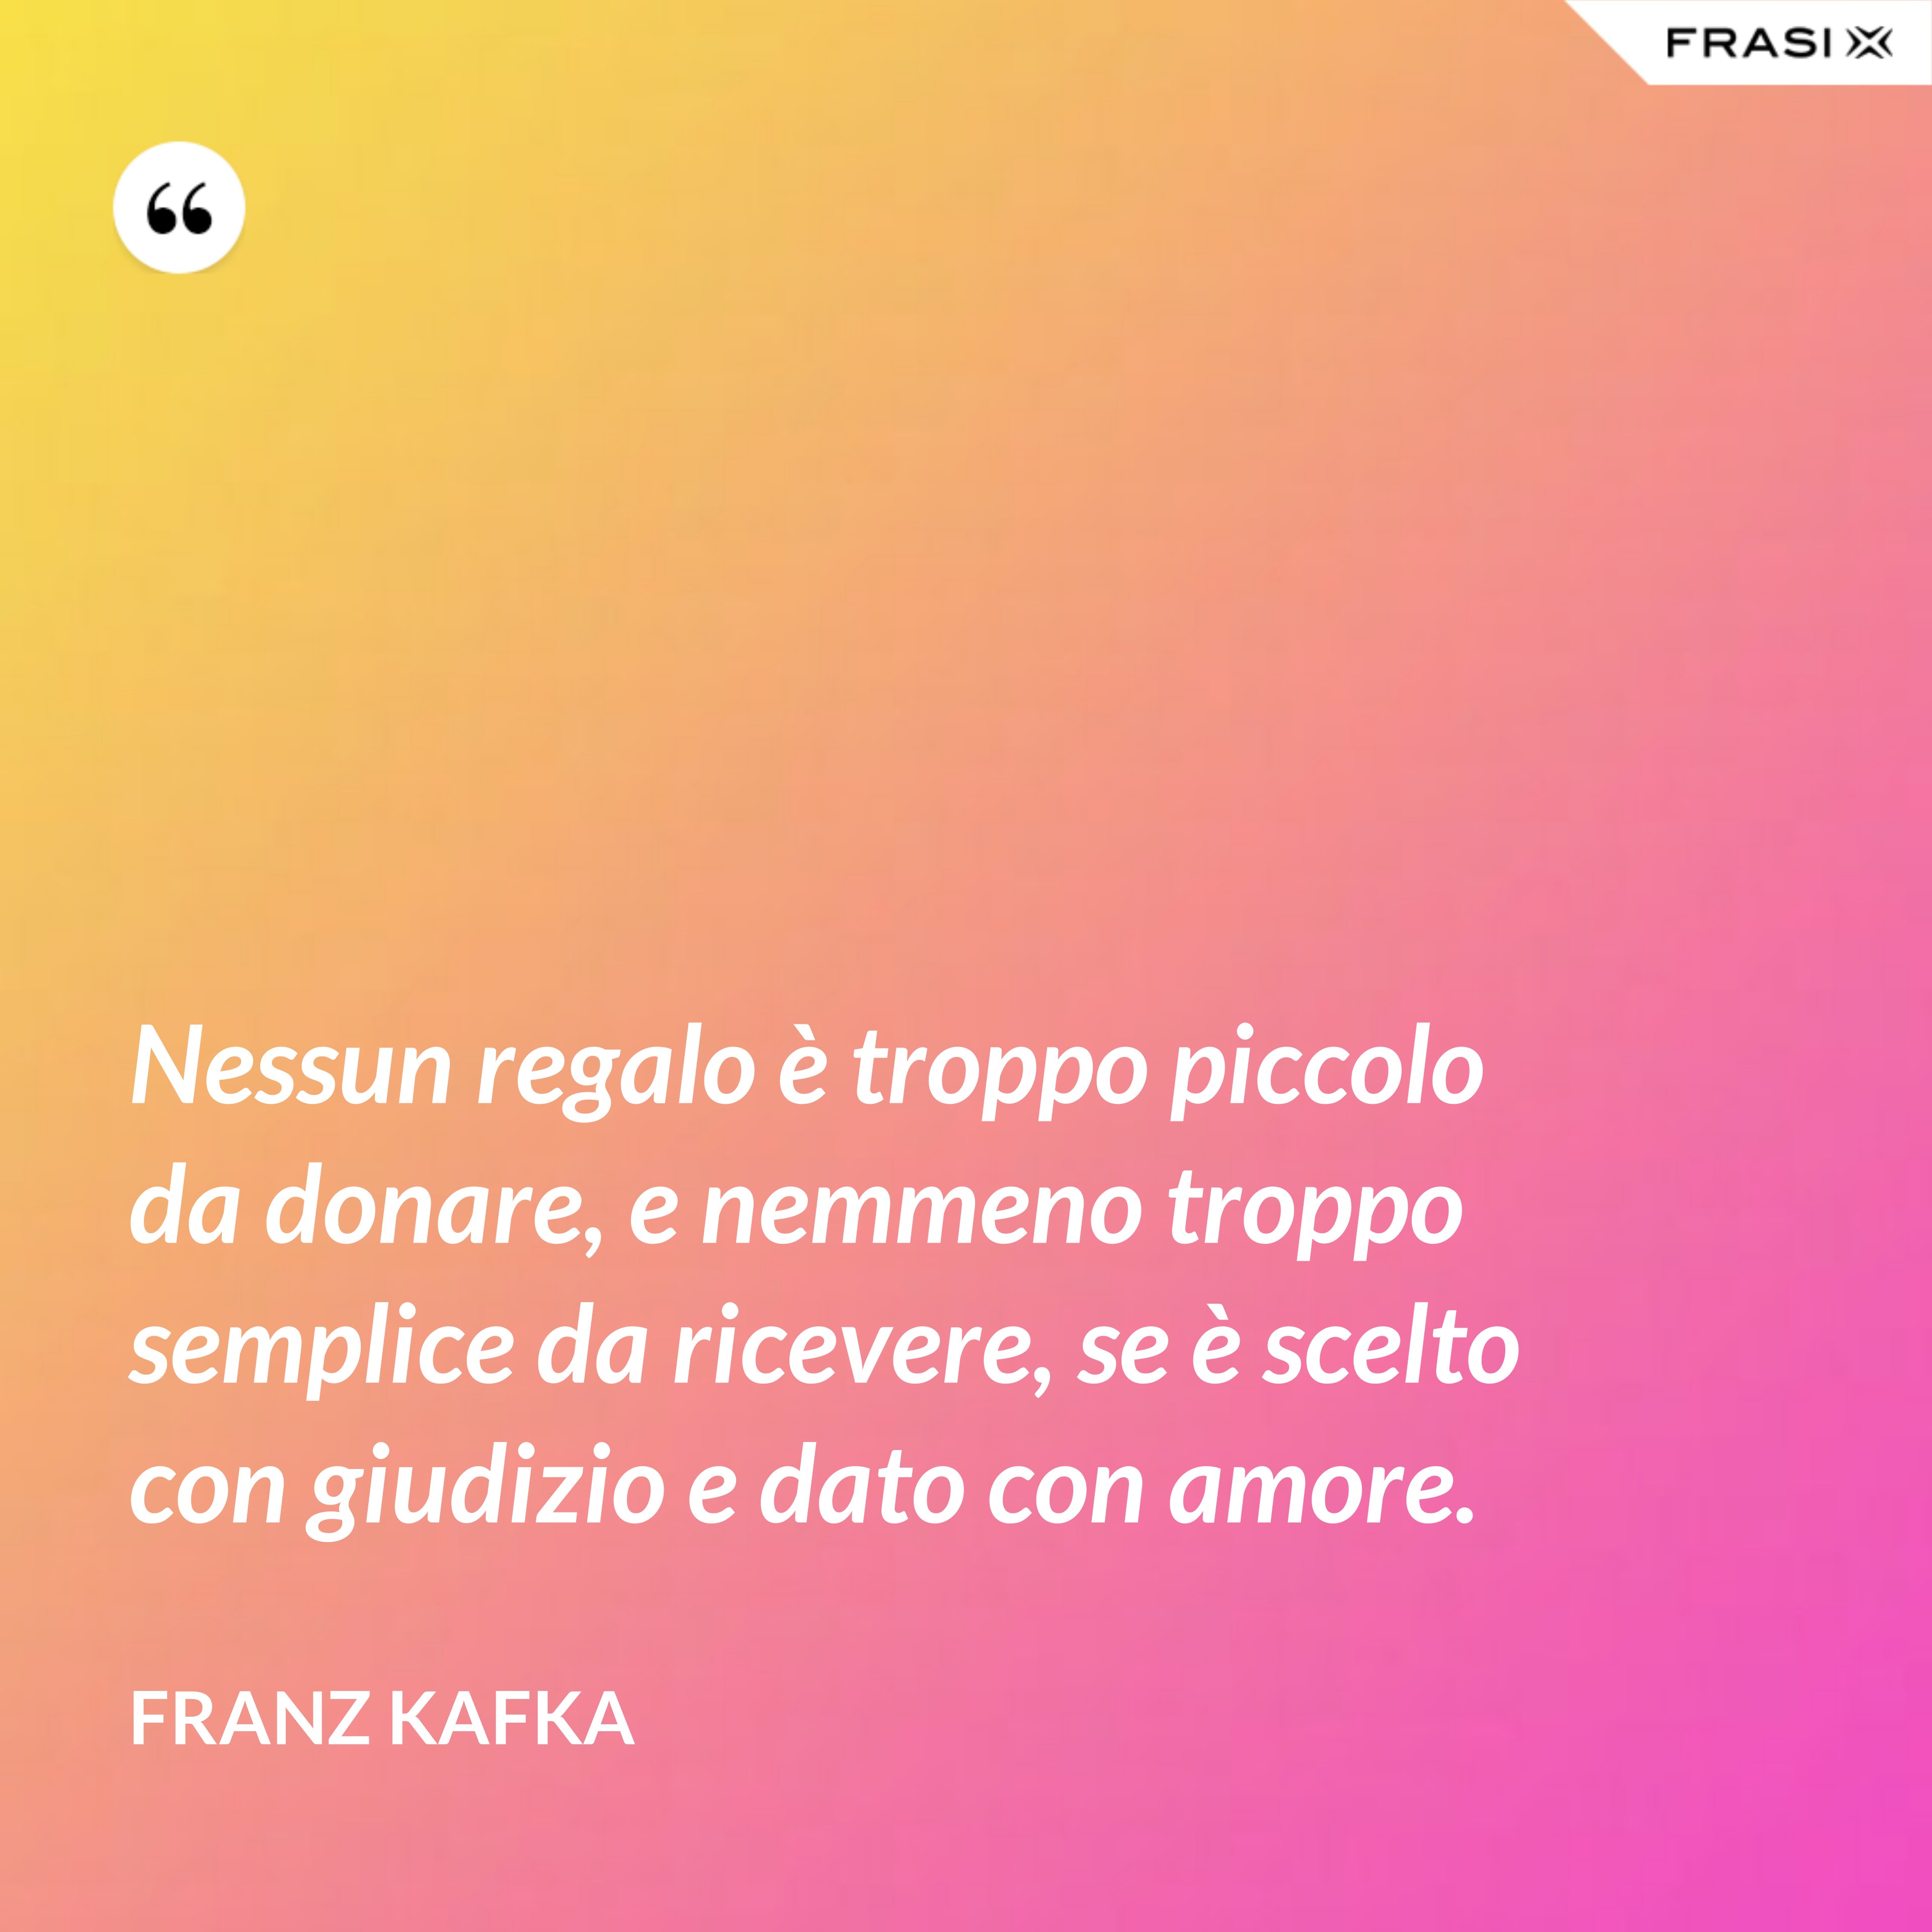 Nessun regalo è troppo piccolo da donare, e nemmeno troppo semplice da ricevere, se è scelto con giudizio e dato con amore. - Franz Kafka